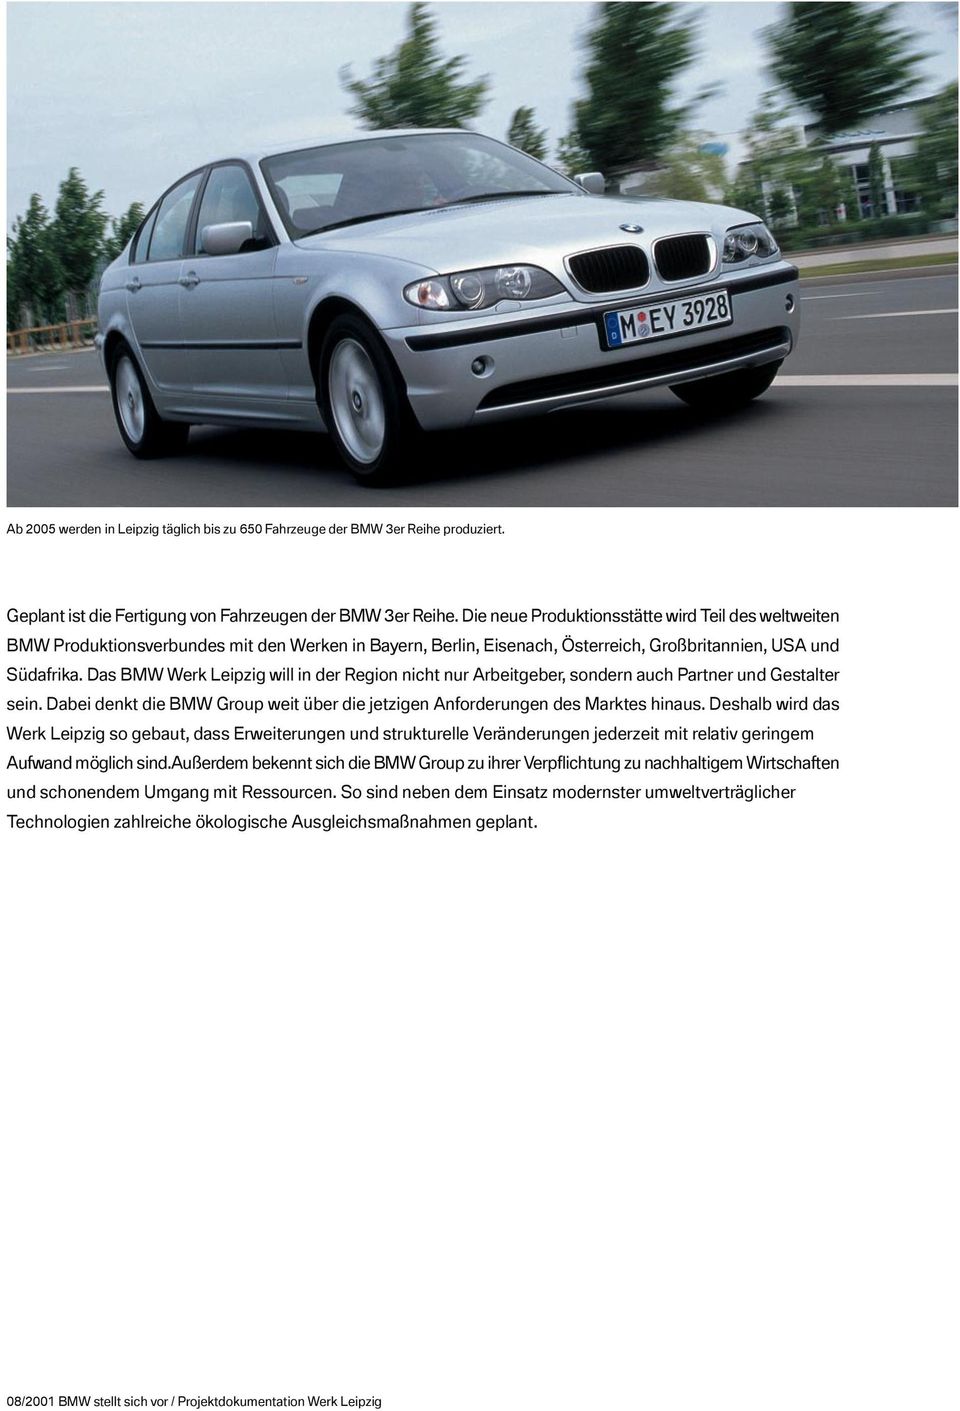 Das BMW Werk Leipzig will in der Region nicht nur Arbeitgeber, sondern auch Partner und Gestalter sein. Dabei denkt die BMW Group weit über die jetzigen Anforderungen des Marktes hinaus.